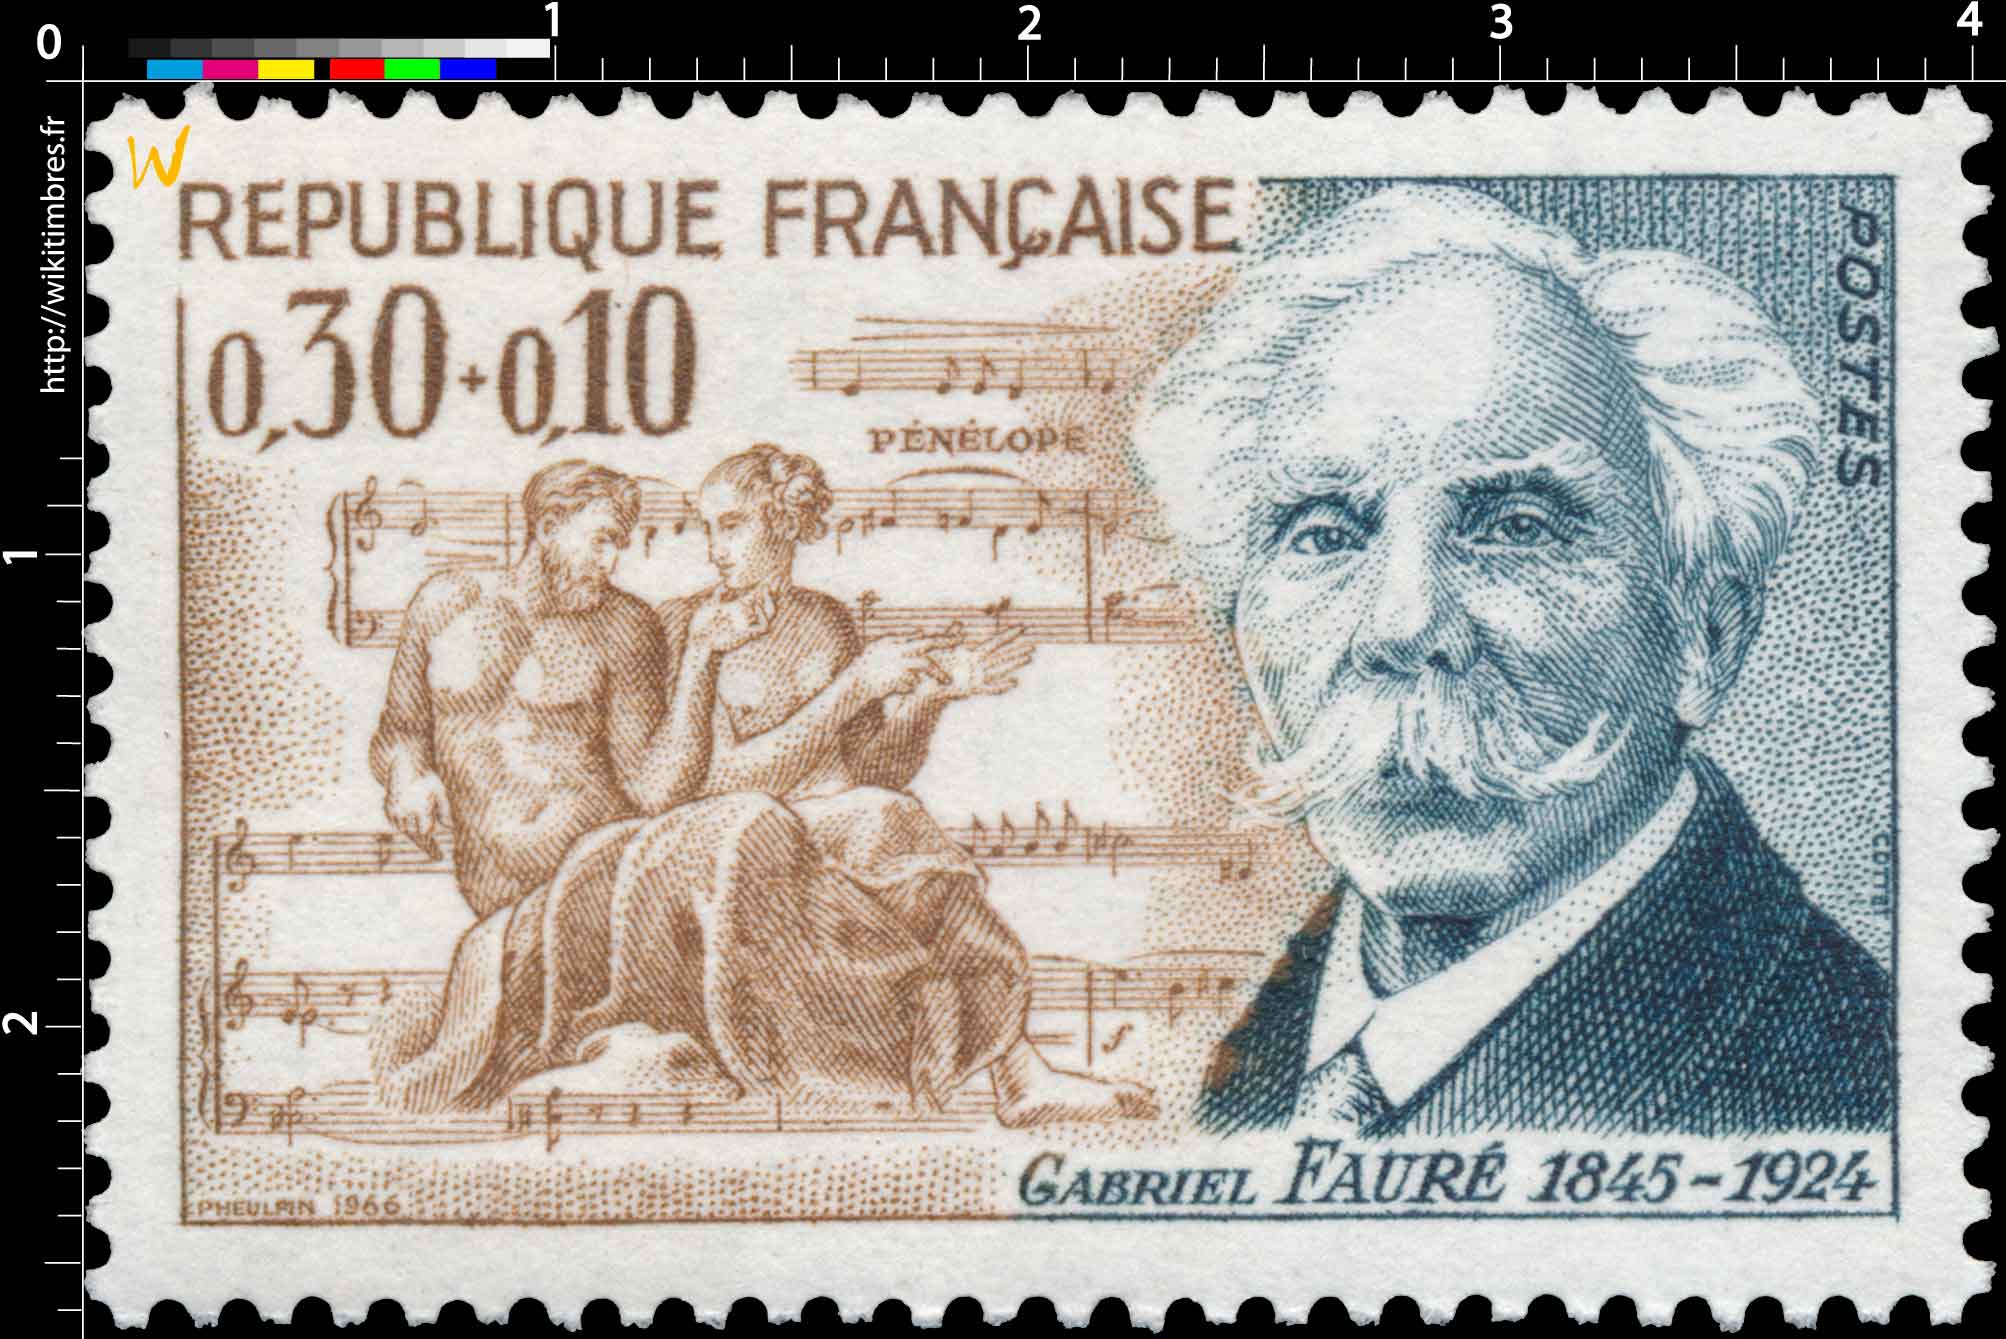 1966 GABRIEL FAURÉ 1845-1924